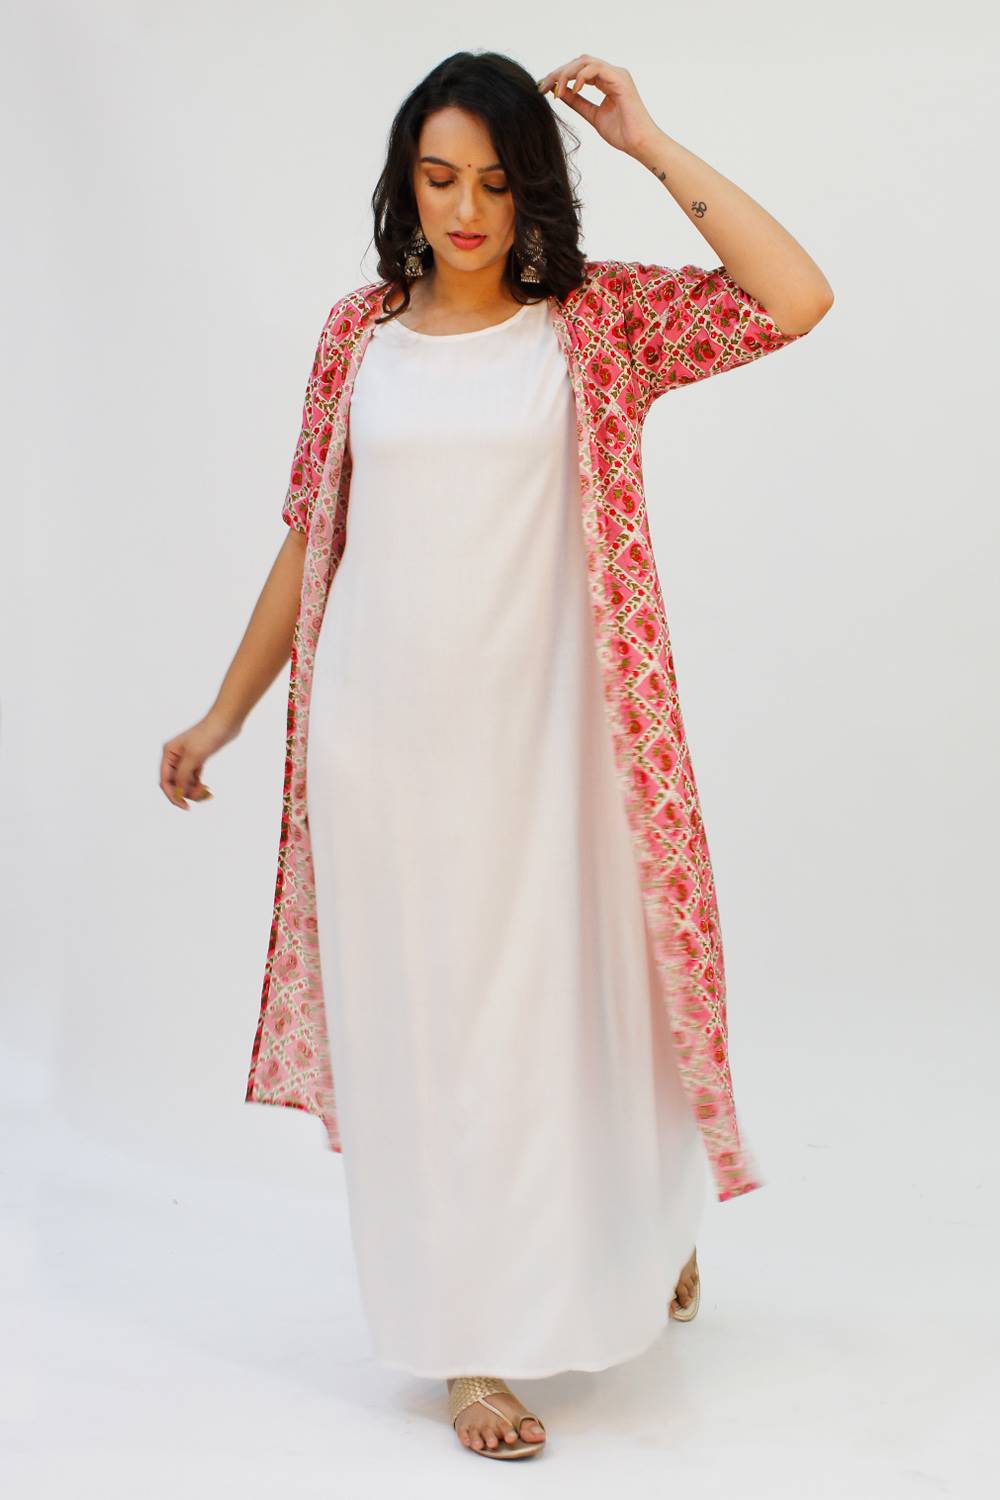 2-Piece Maxi Dress and Jacket - Cardigans & Kimonos - Women | Shukr Clothing